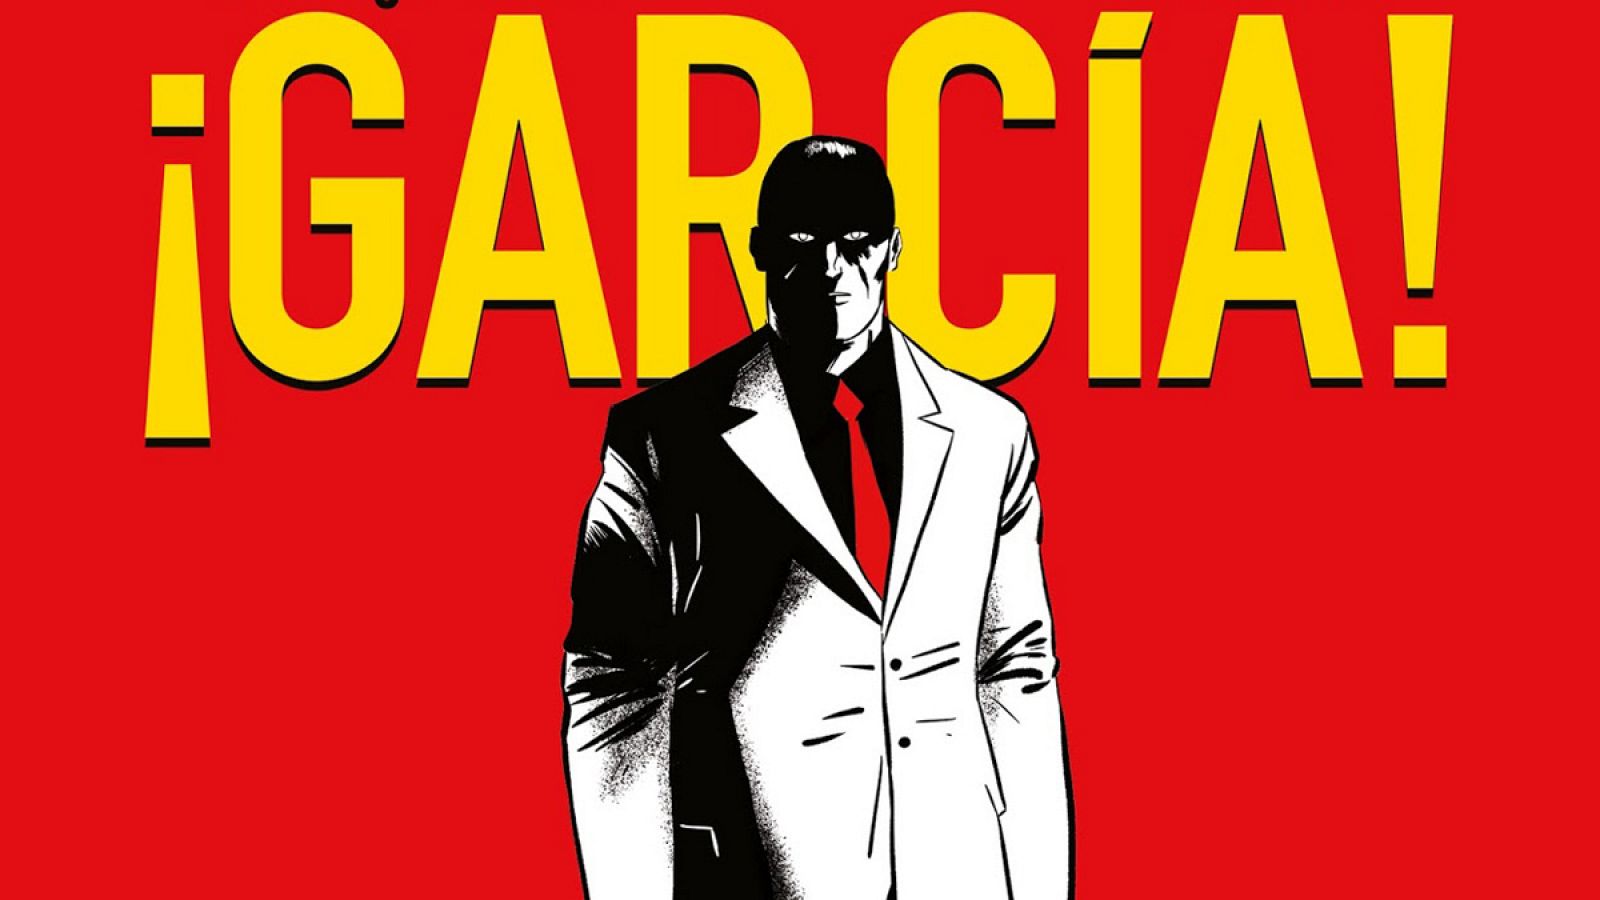 Fragmento de la portada de '¡Garcia!'